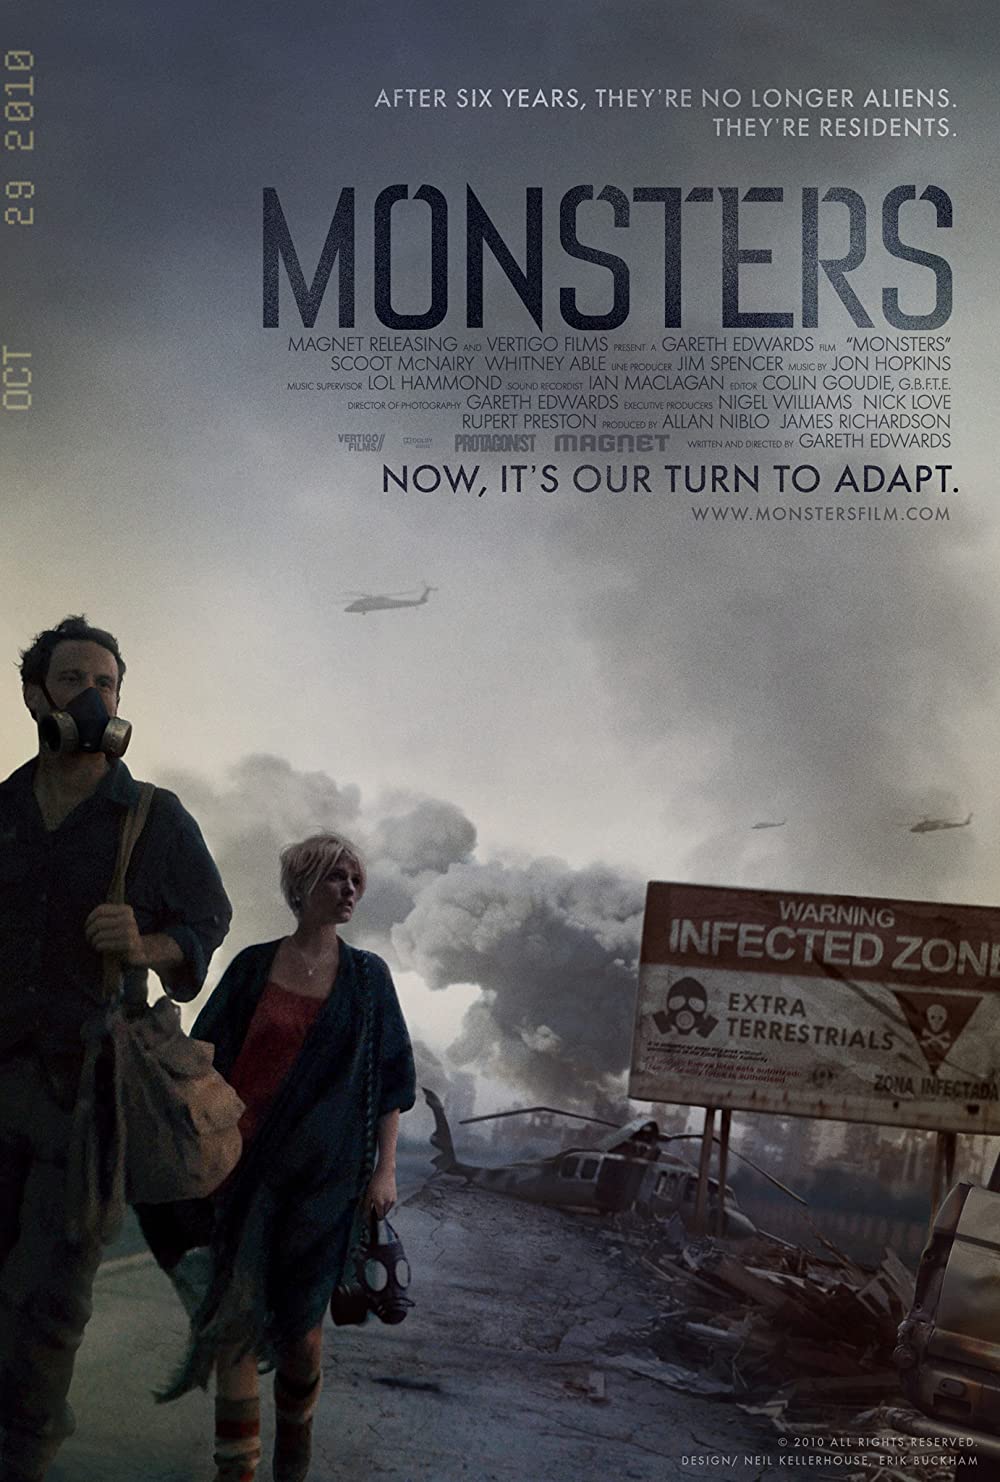 Filmbeschreibung zu Monsters